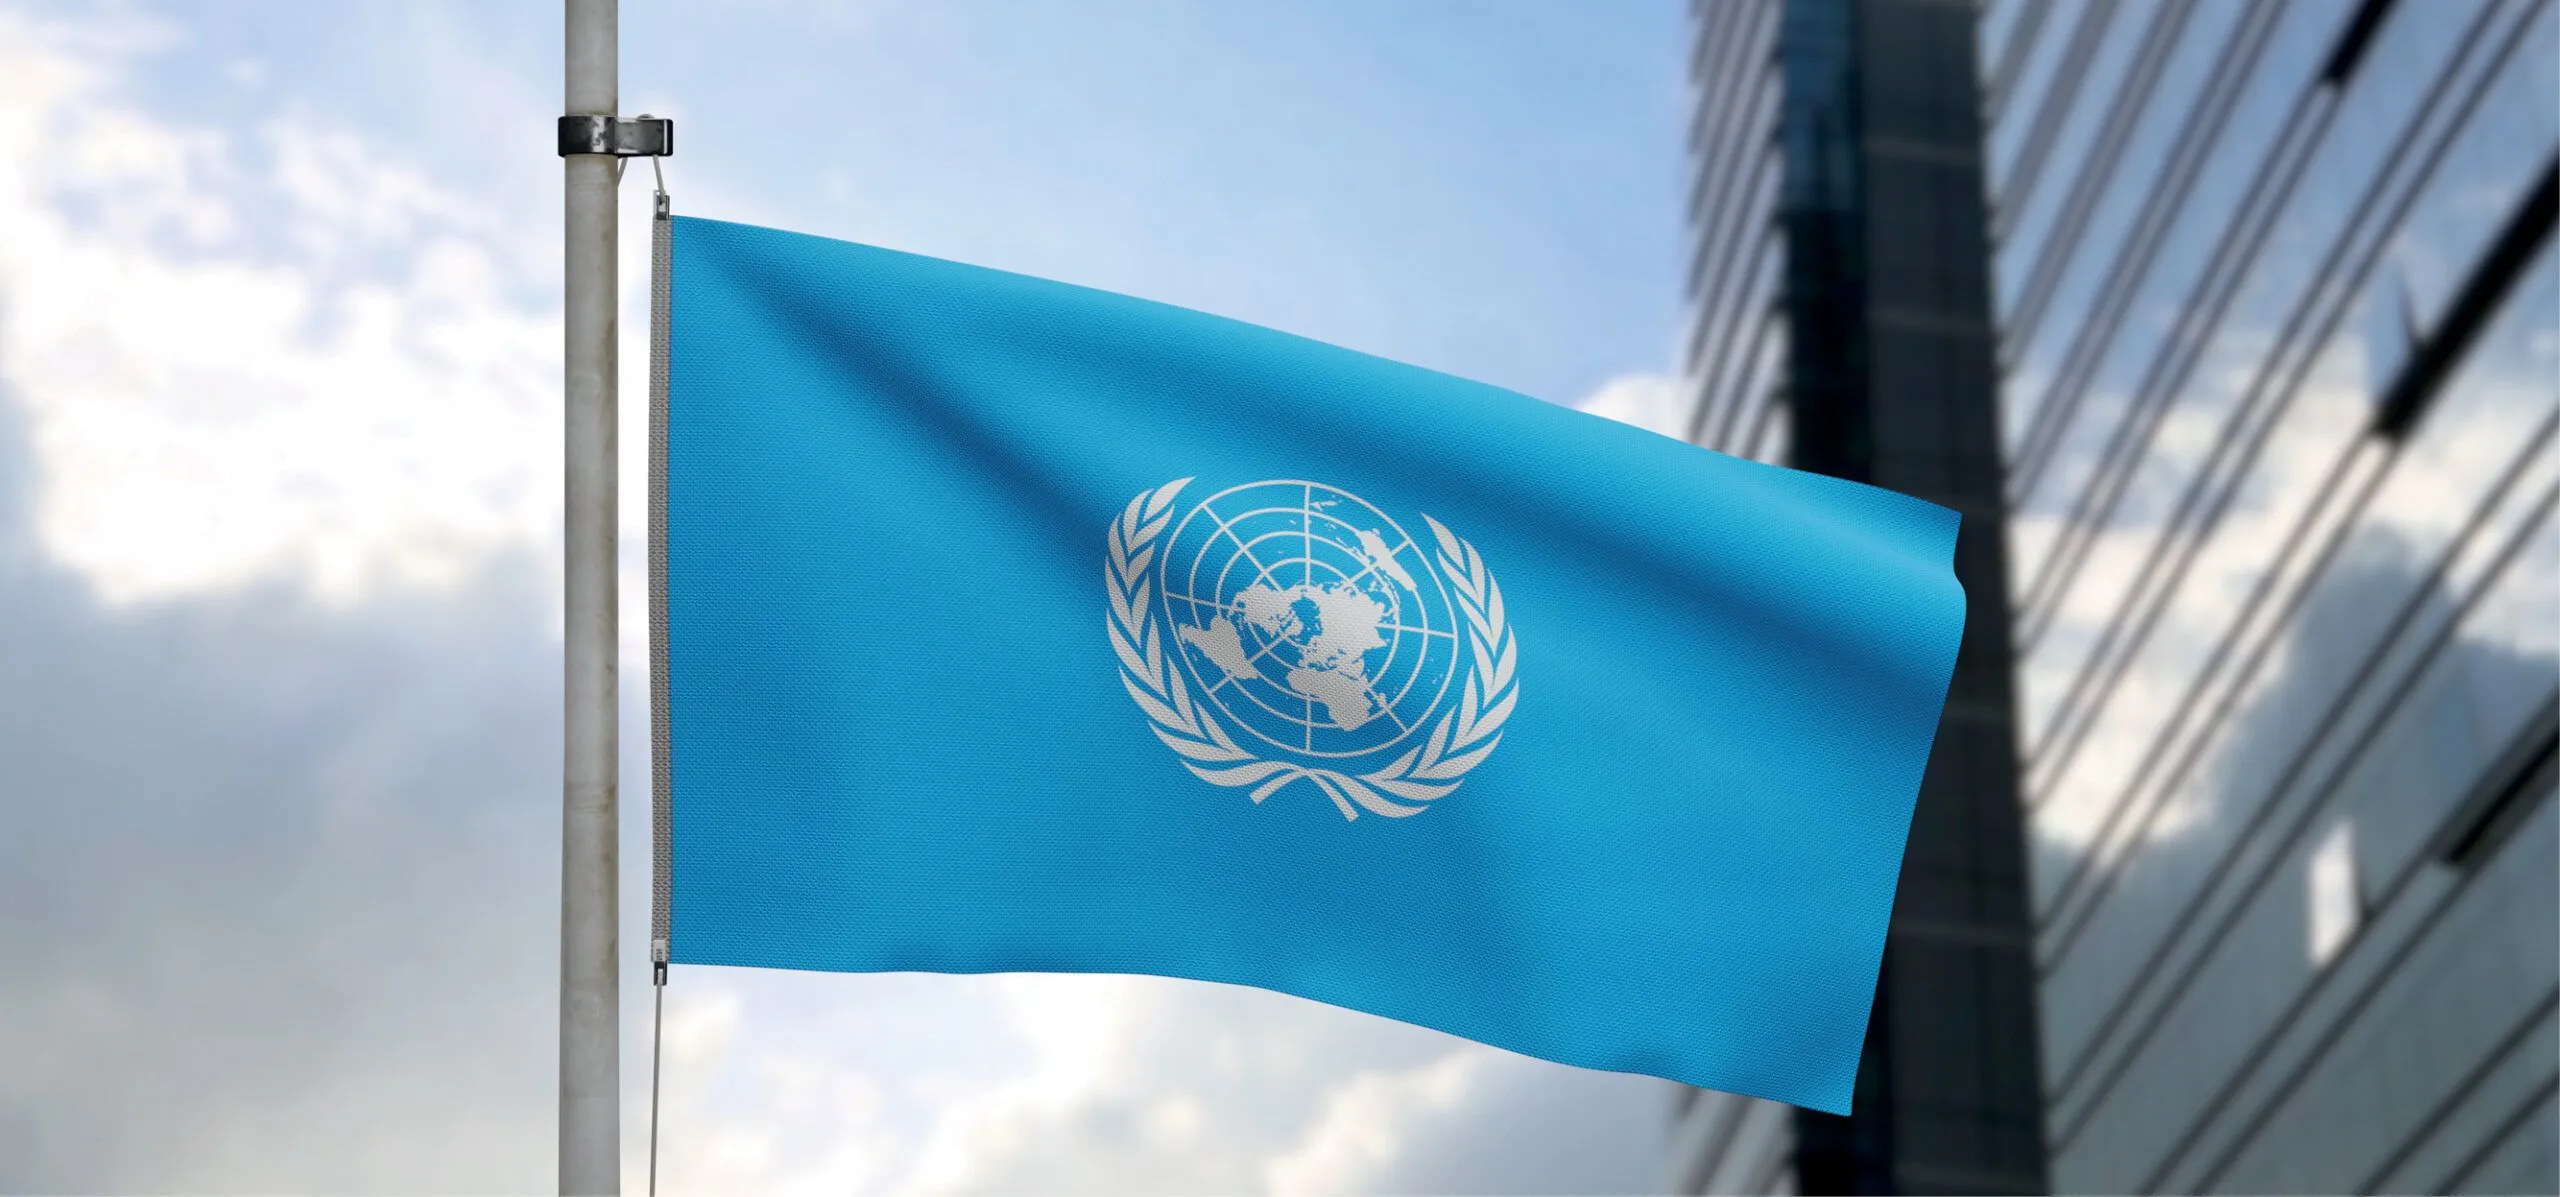 Alguno de los países miembros de la ONU, o fuera de ella, es democrático?  Partes I y II | abogacía